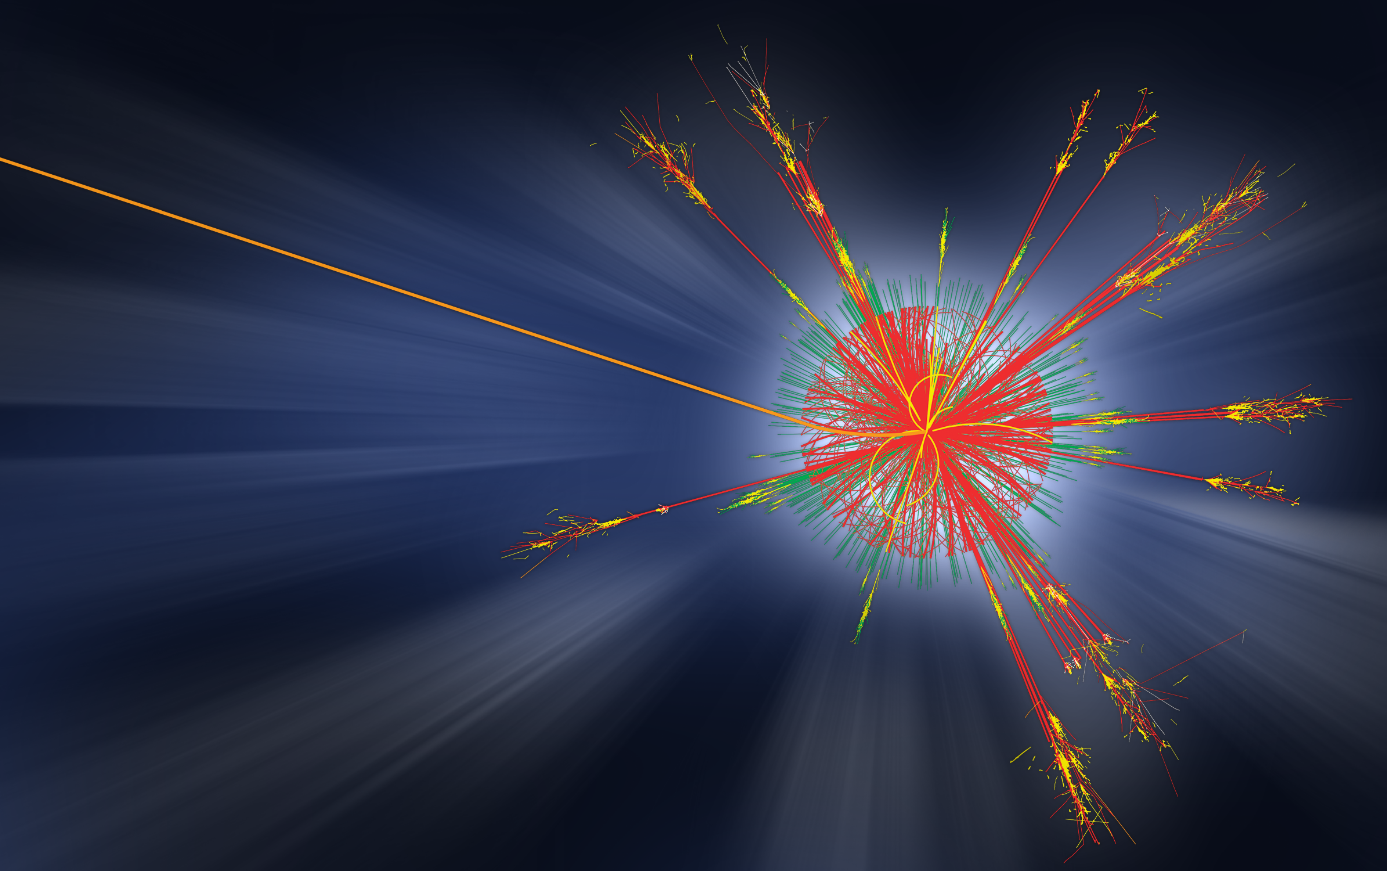 Simulace vypaření mikroskopické černé díry vzniklé na LHC emisí Hawkingova záření. Urychlovač LHC mikroskopické černé díry neobjevil a jejich existence i existence Hawkingova záření zůstávají stále v oblasti hypotéz. (Zdroj CERN).